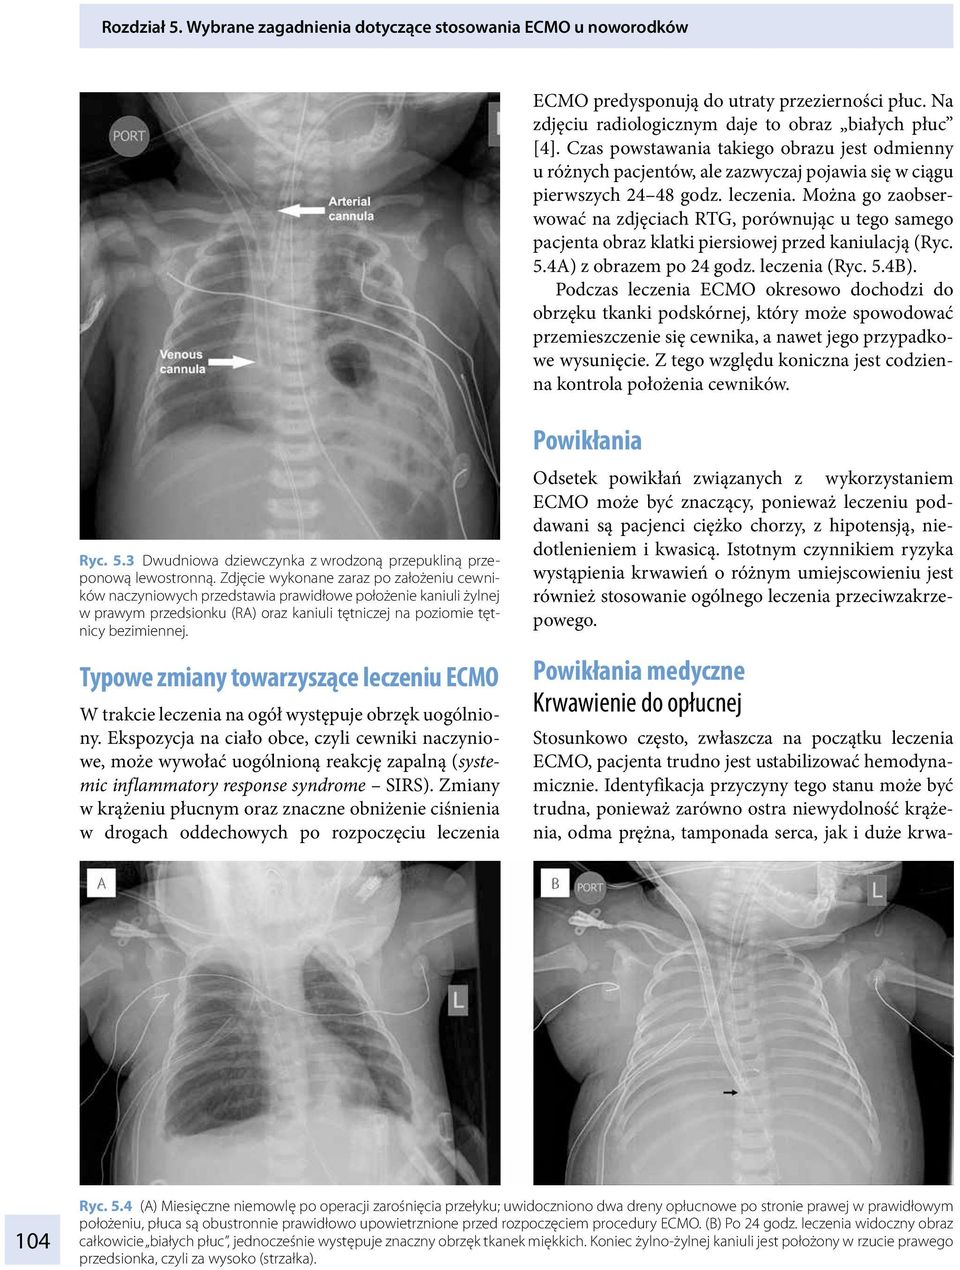 Można go zaobserwować na zdjęciach RTG, porównując u tego samego pacjenta obraz klatki piersiowej przed kaniulacją (Ryc. 5.4A) z obrazem po 24 godz. leczenia (Ryc. 5.4B).